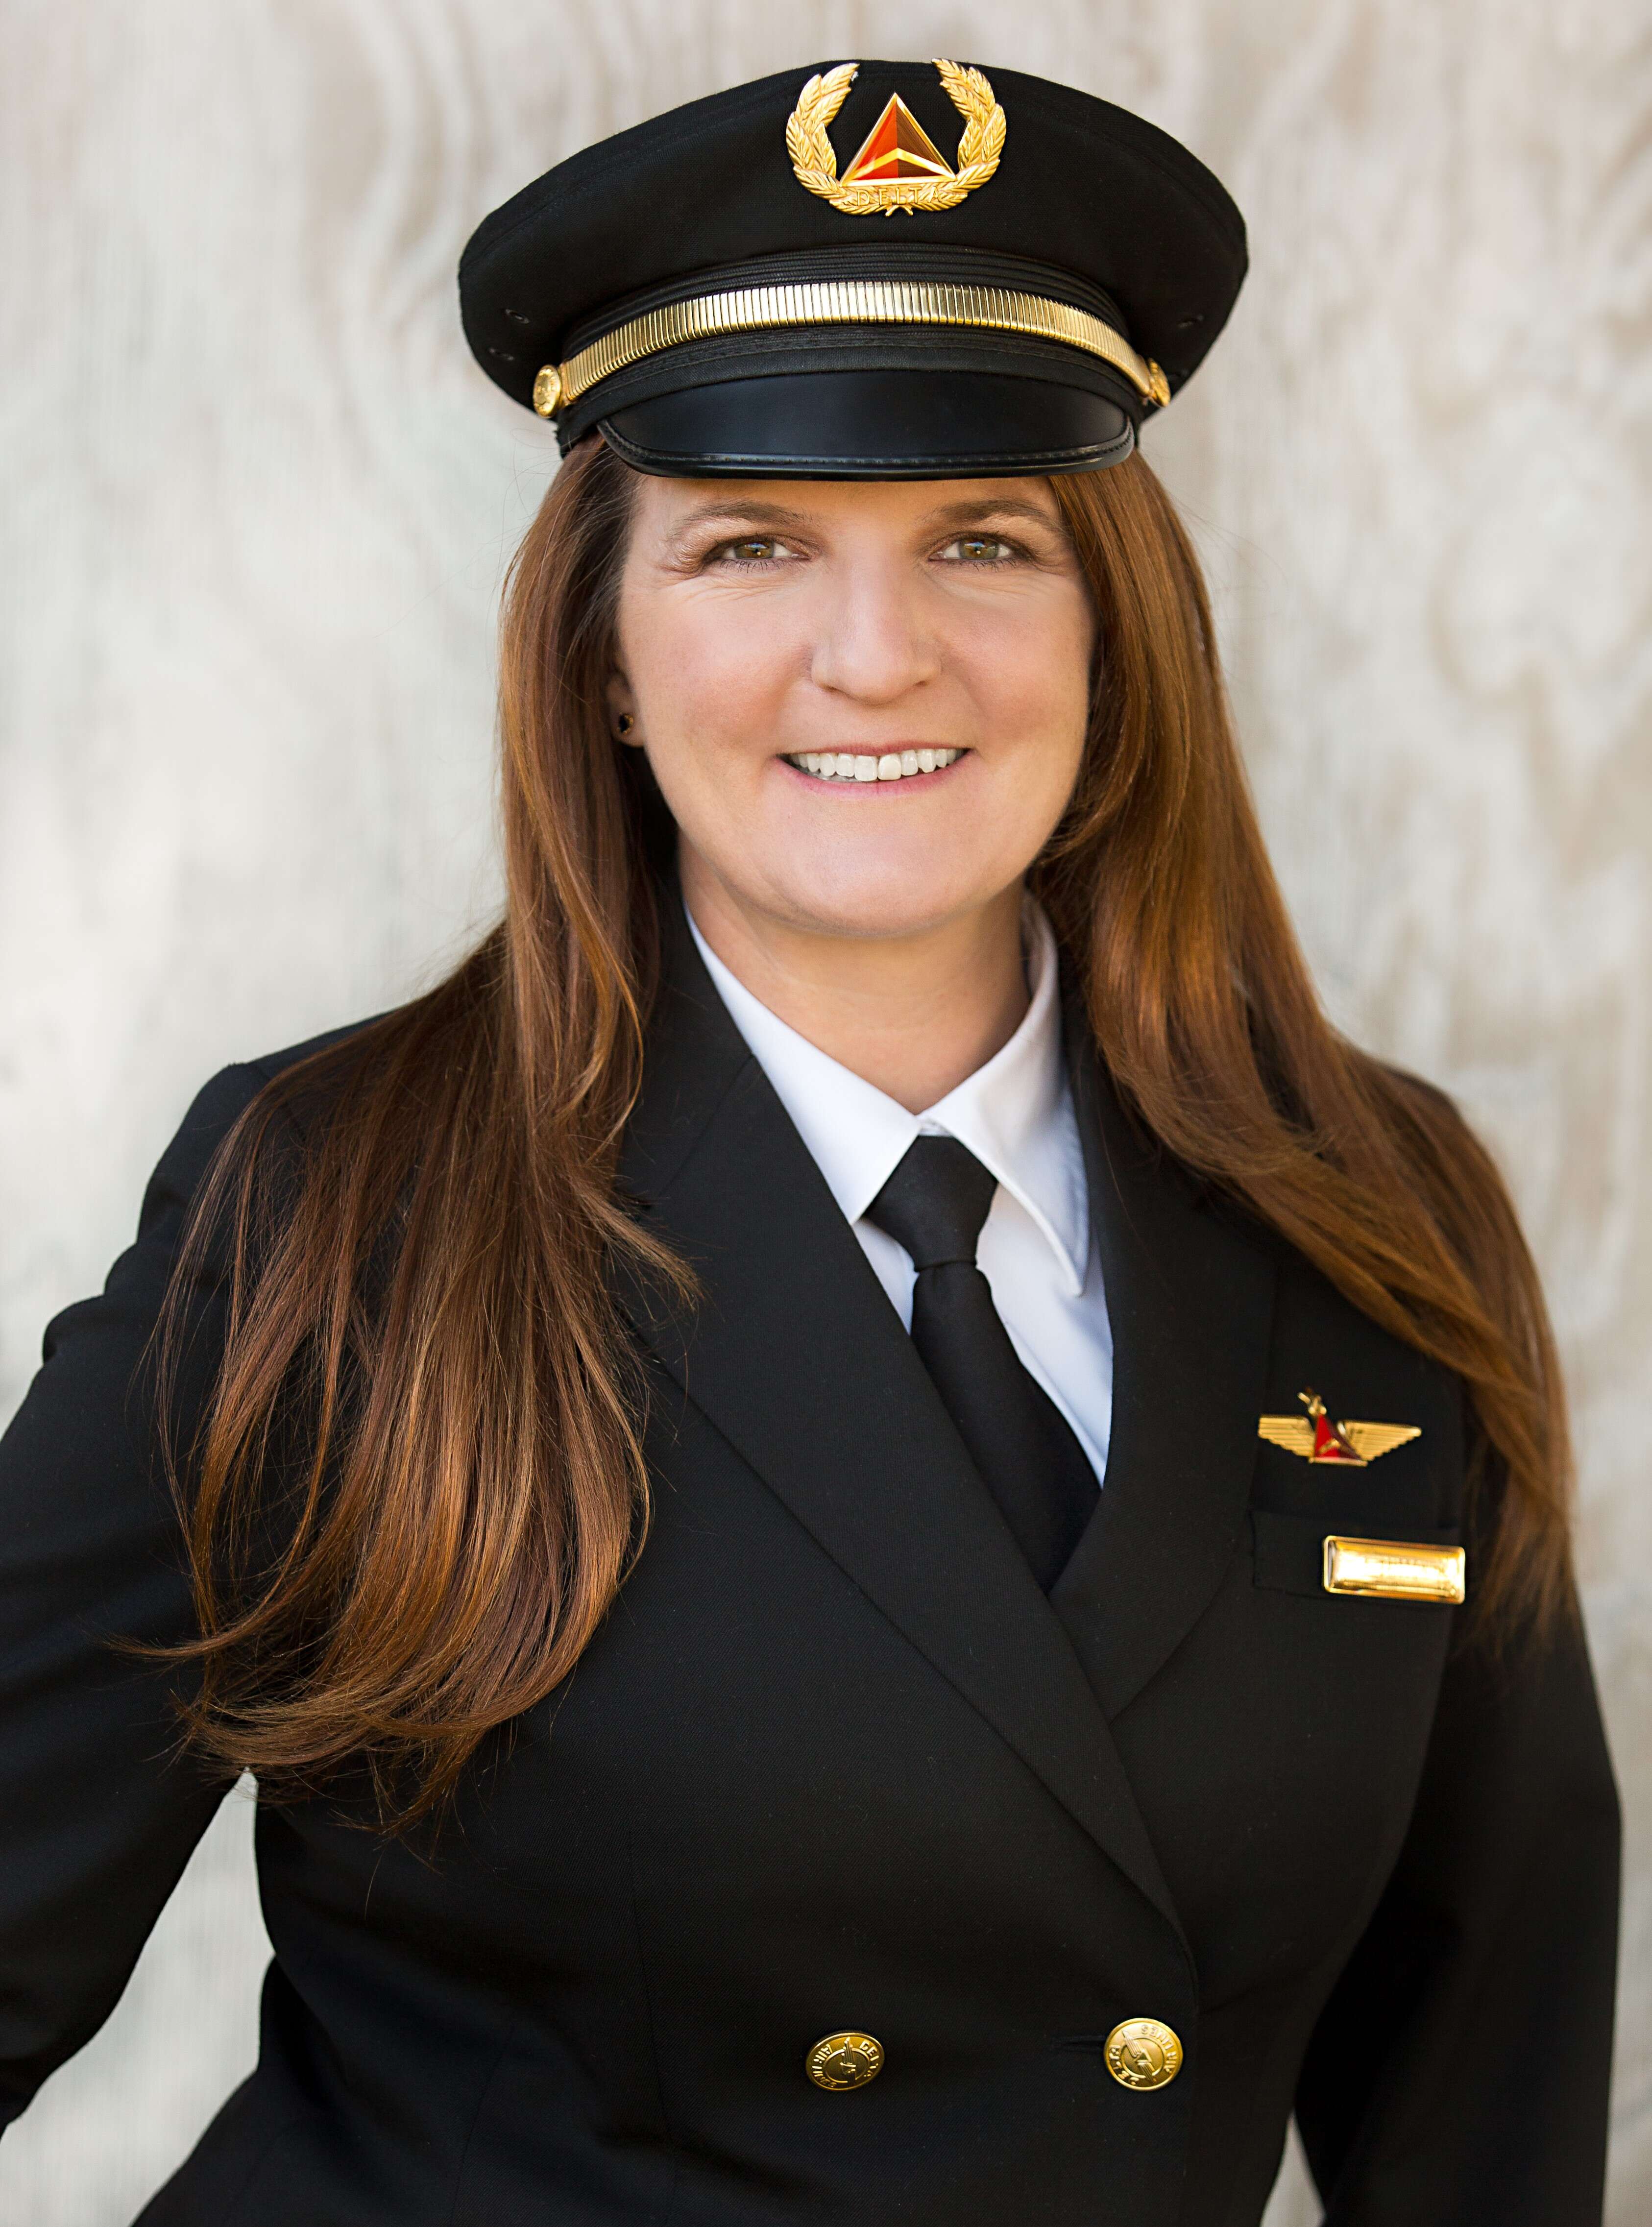 Delta Captain and UVU Alumni - Alison Britton